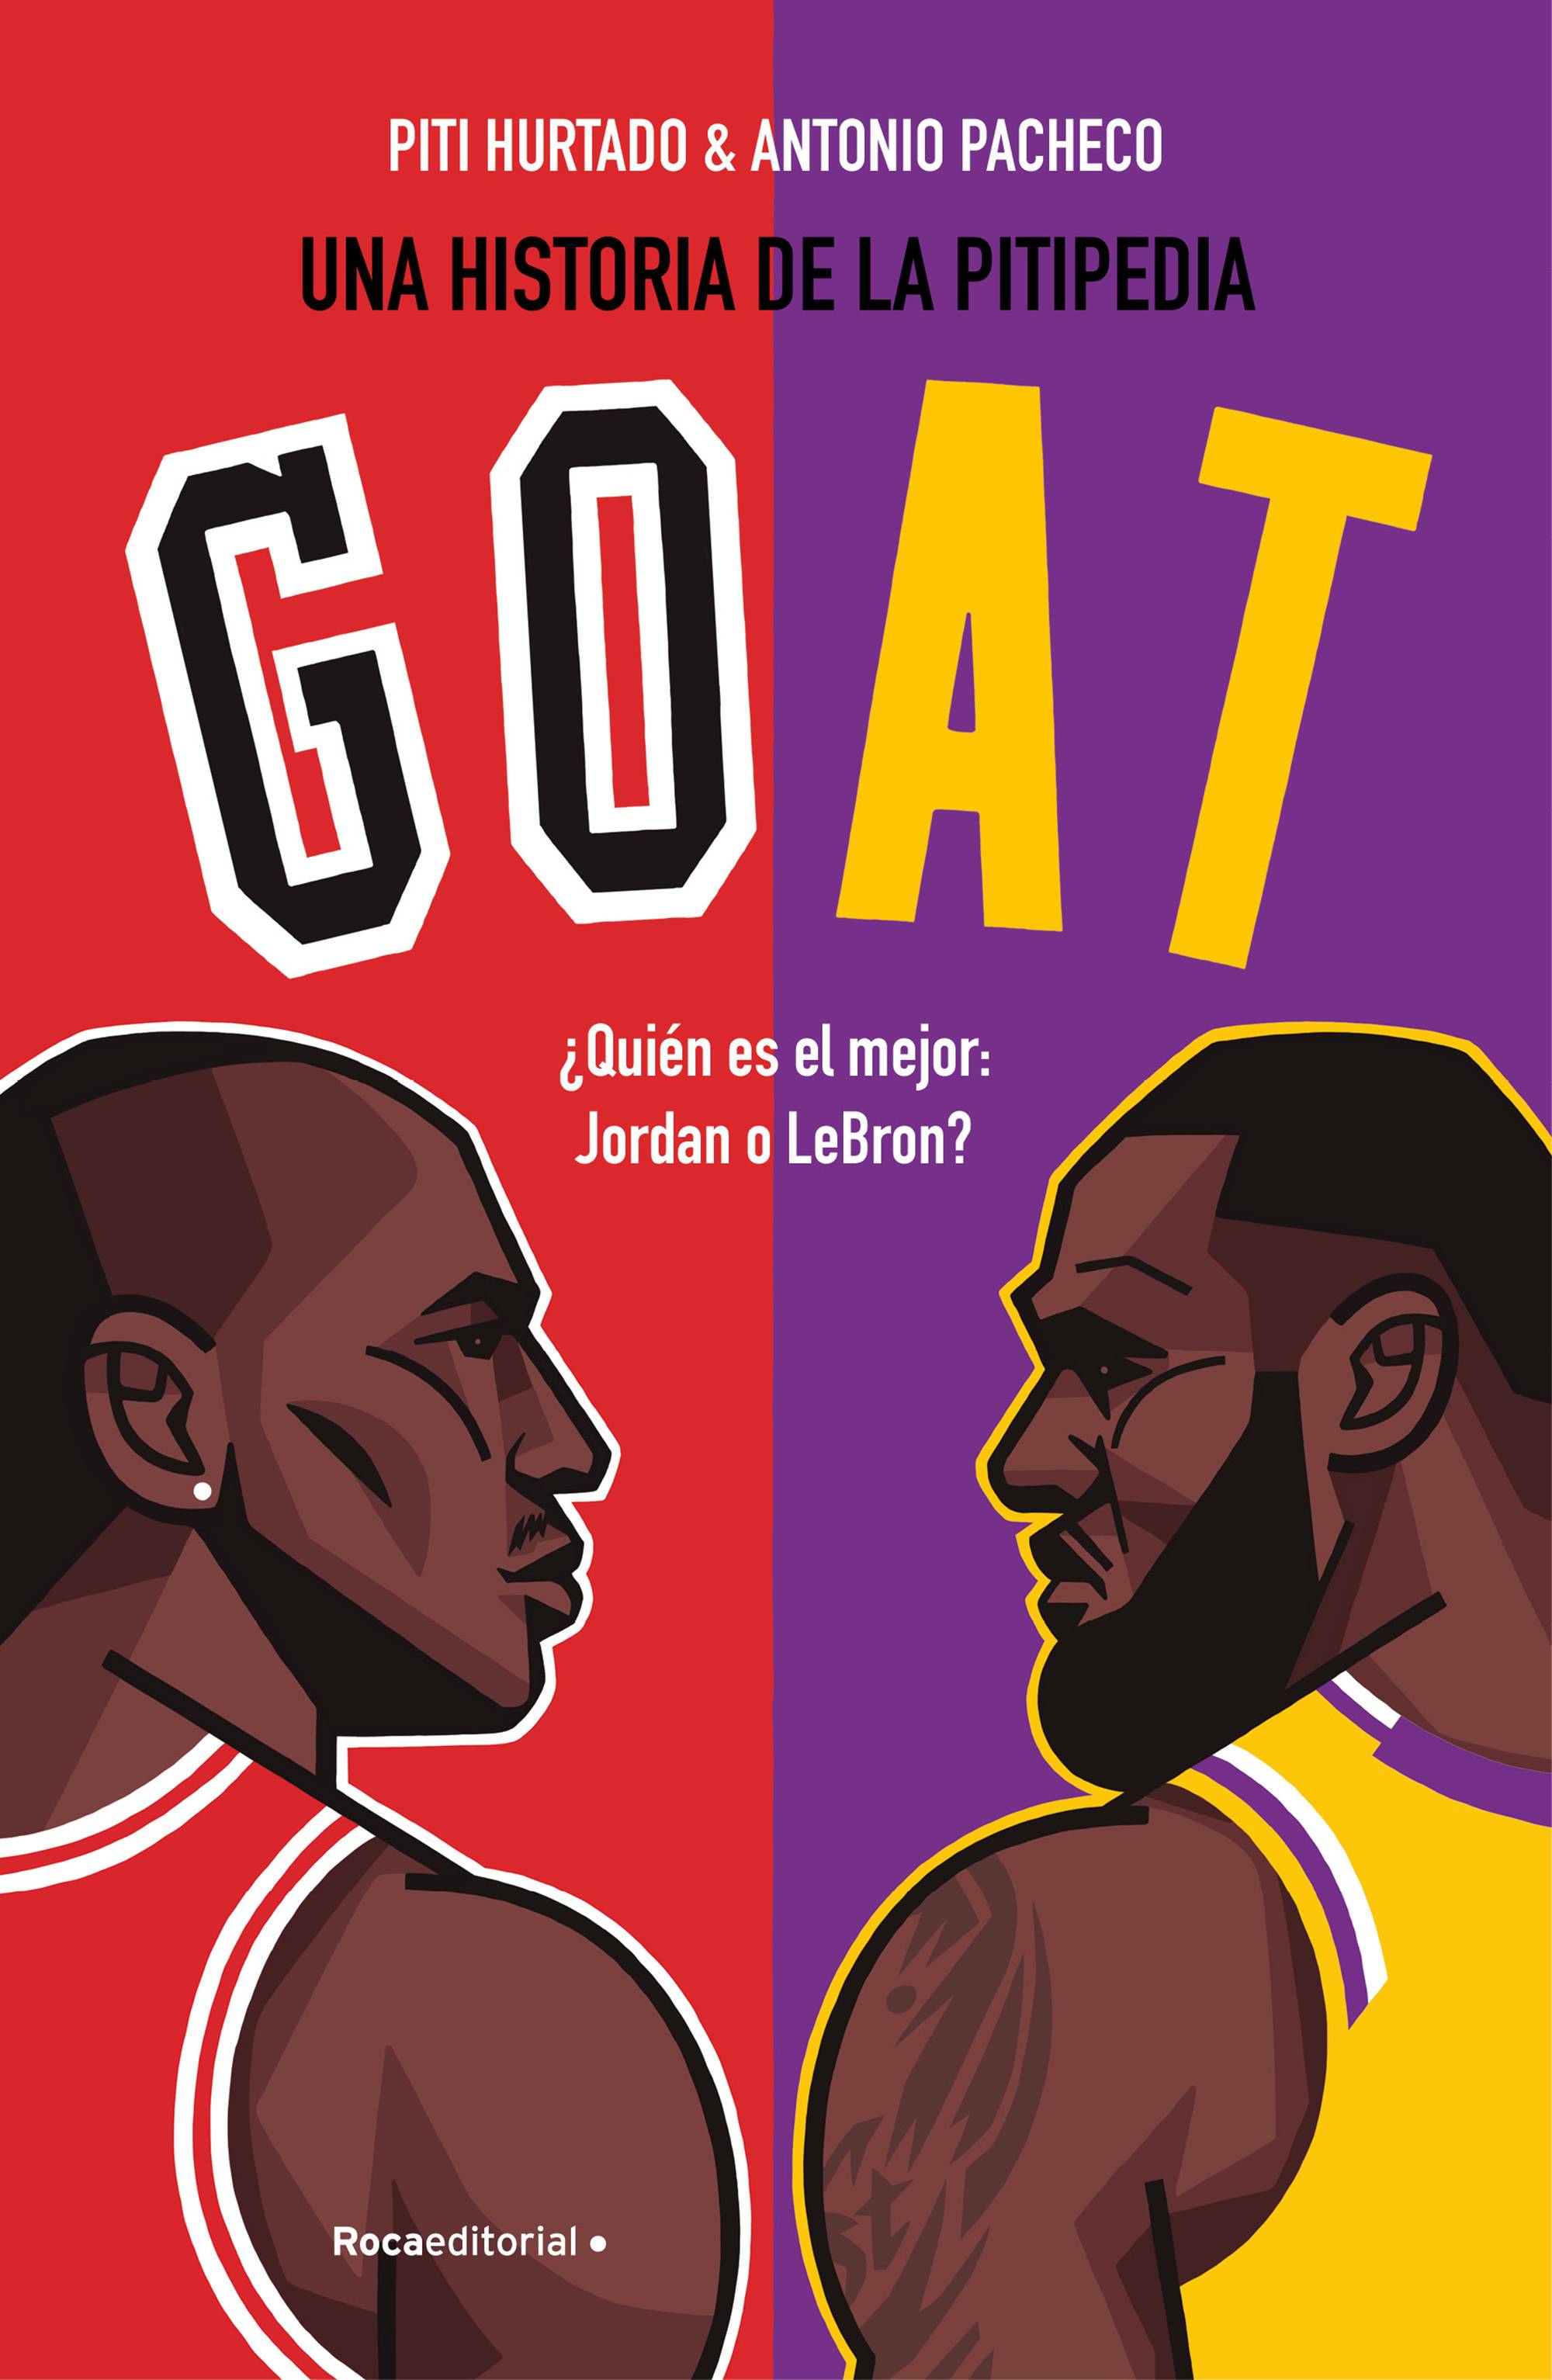 GOAT ¿Quién es mejor: Jordan o LeBron?